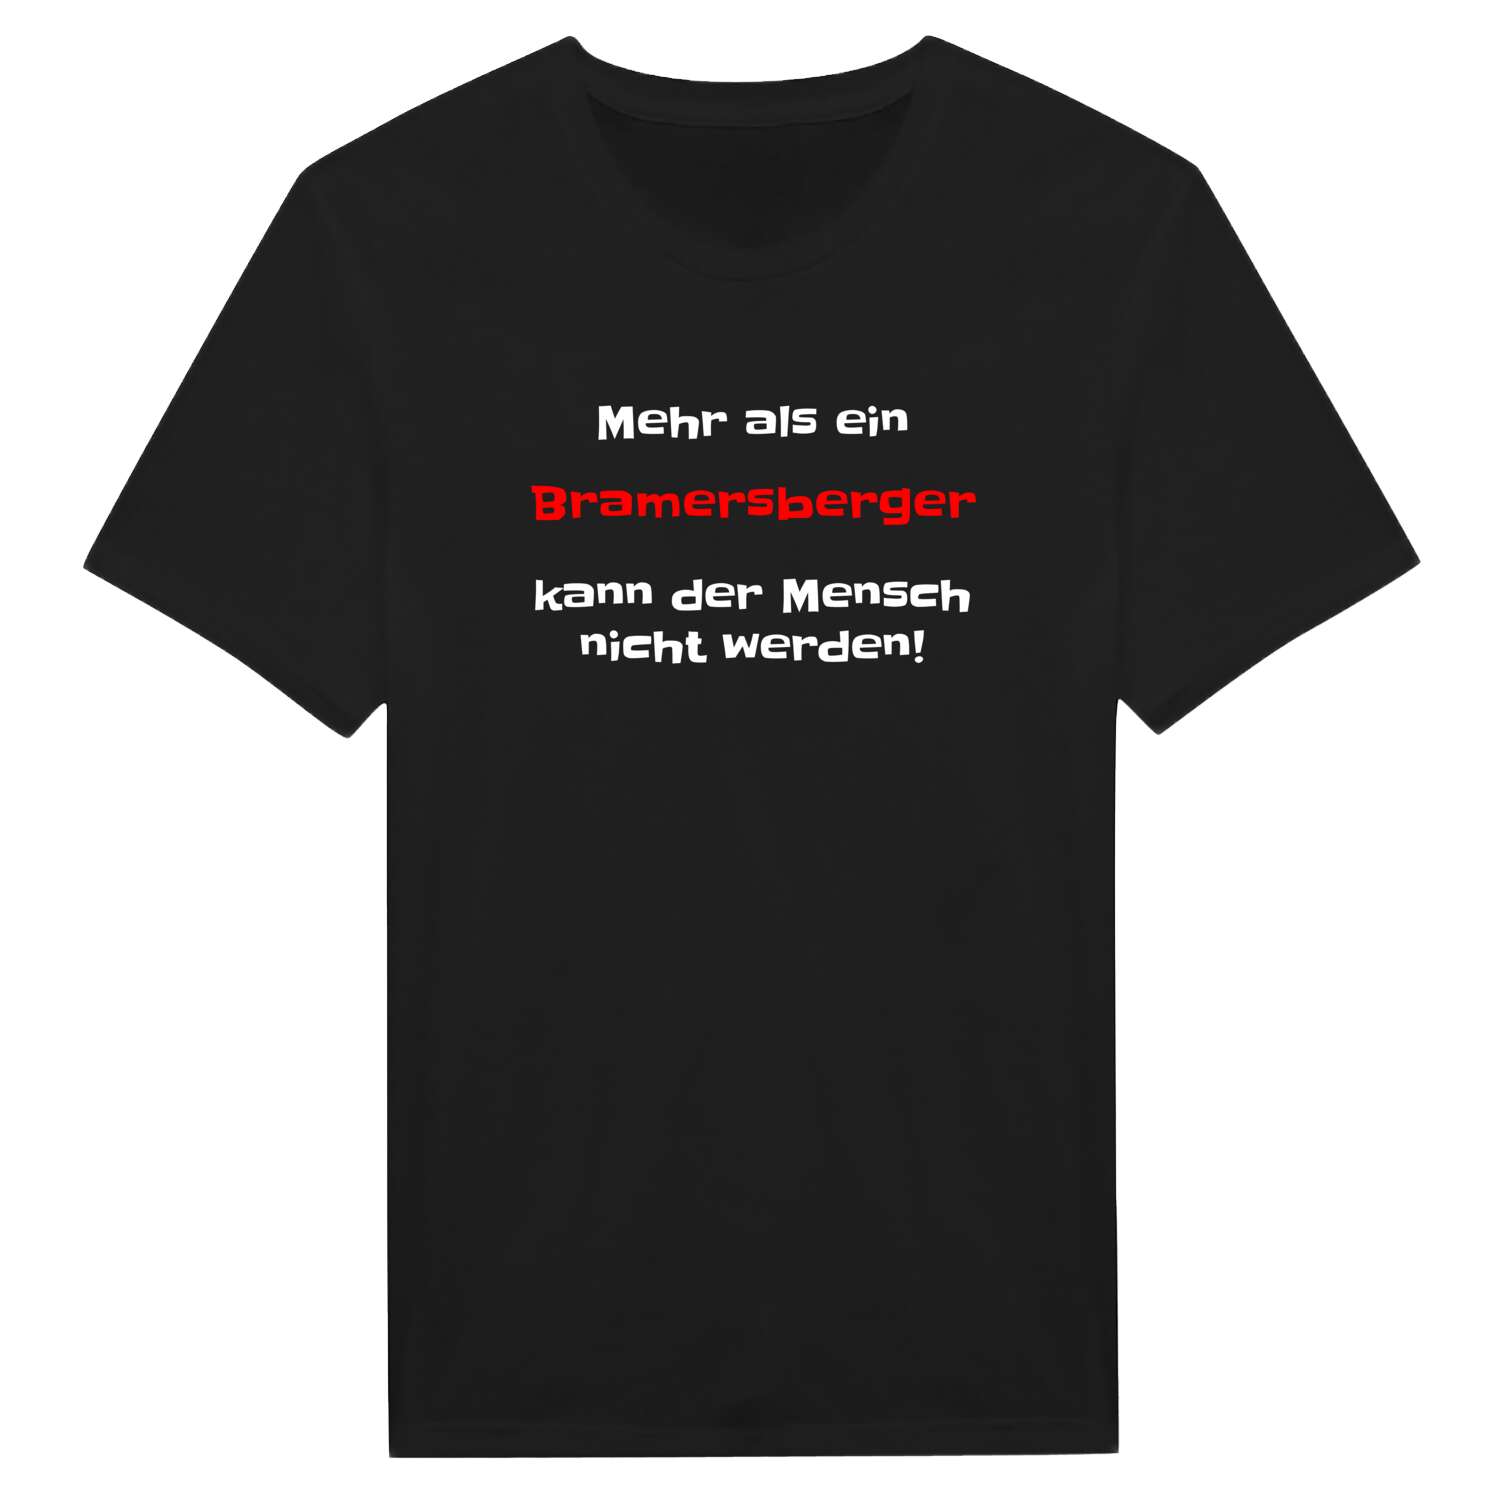 Bramersberg T-Shirt »Mehr als ein«